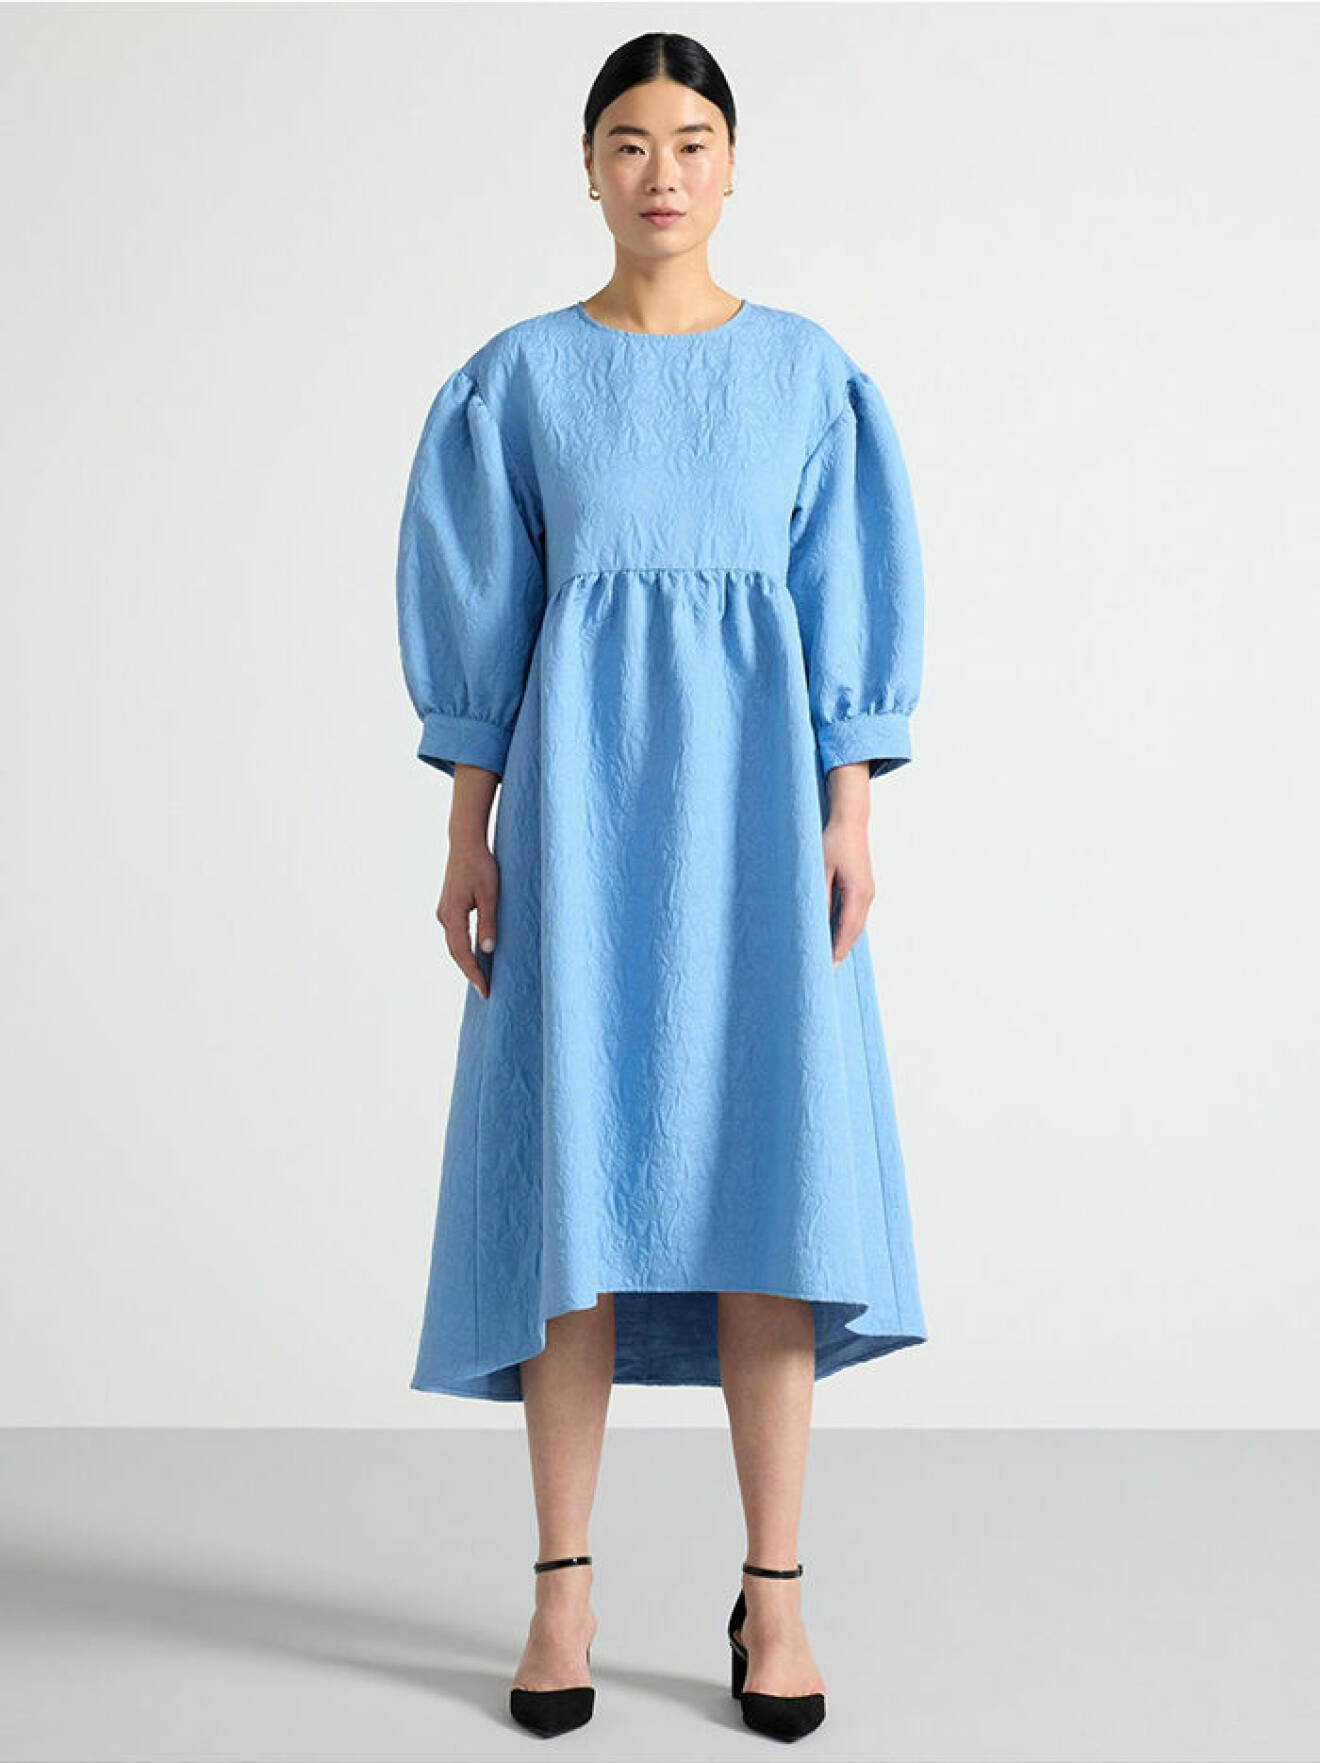 Ljusblå klänning med puffärmar från Lindex som liknar Cecilie Bahnsens klänningar